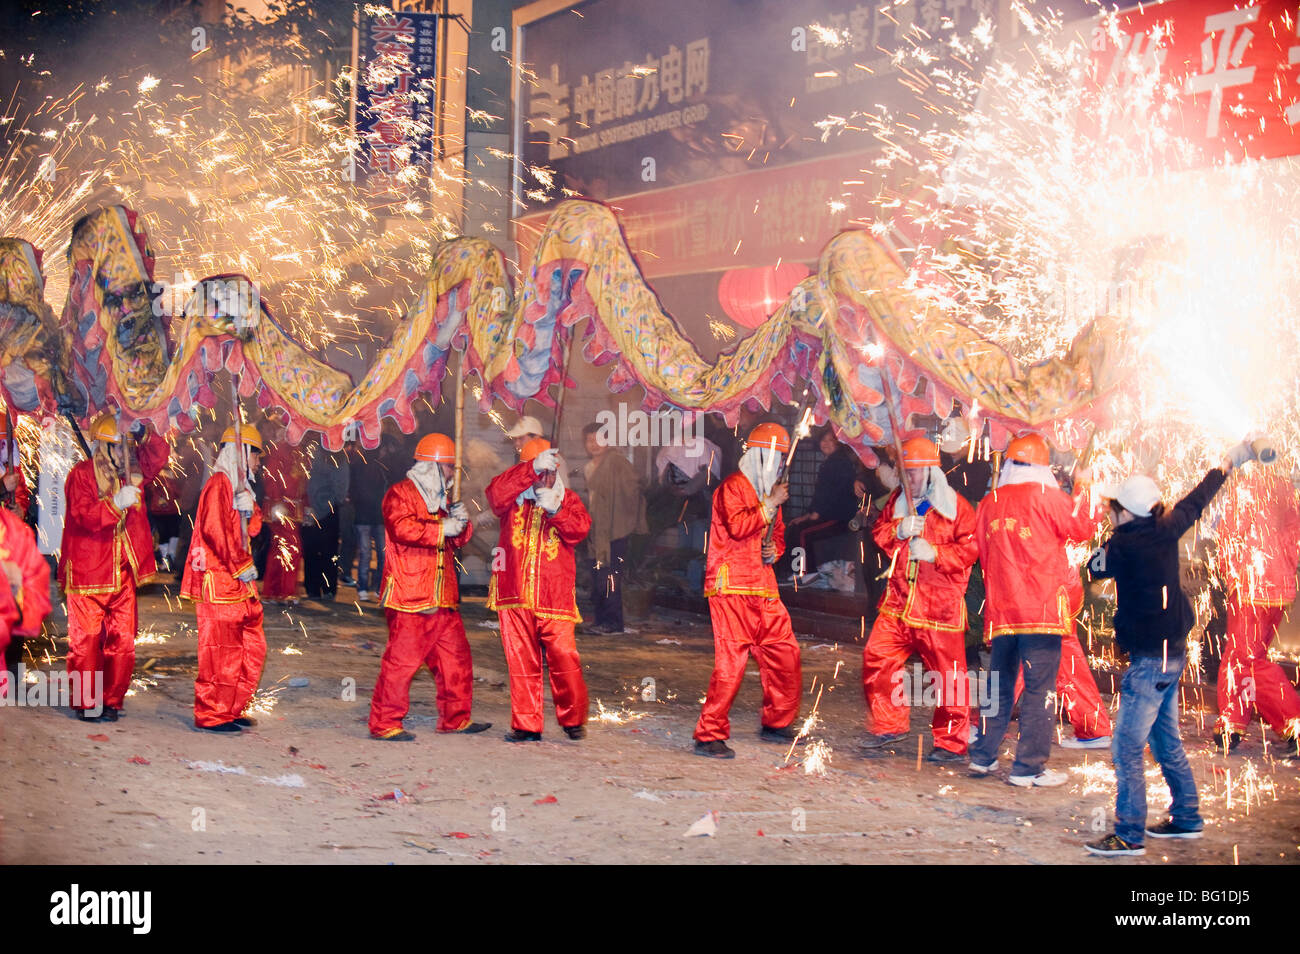 Fire Dragon lunar New Year festival, Taijiang town, Guizhou Province, China, Asia Stock Photo